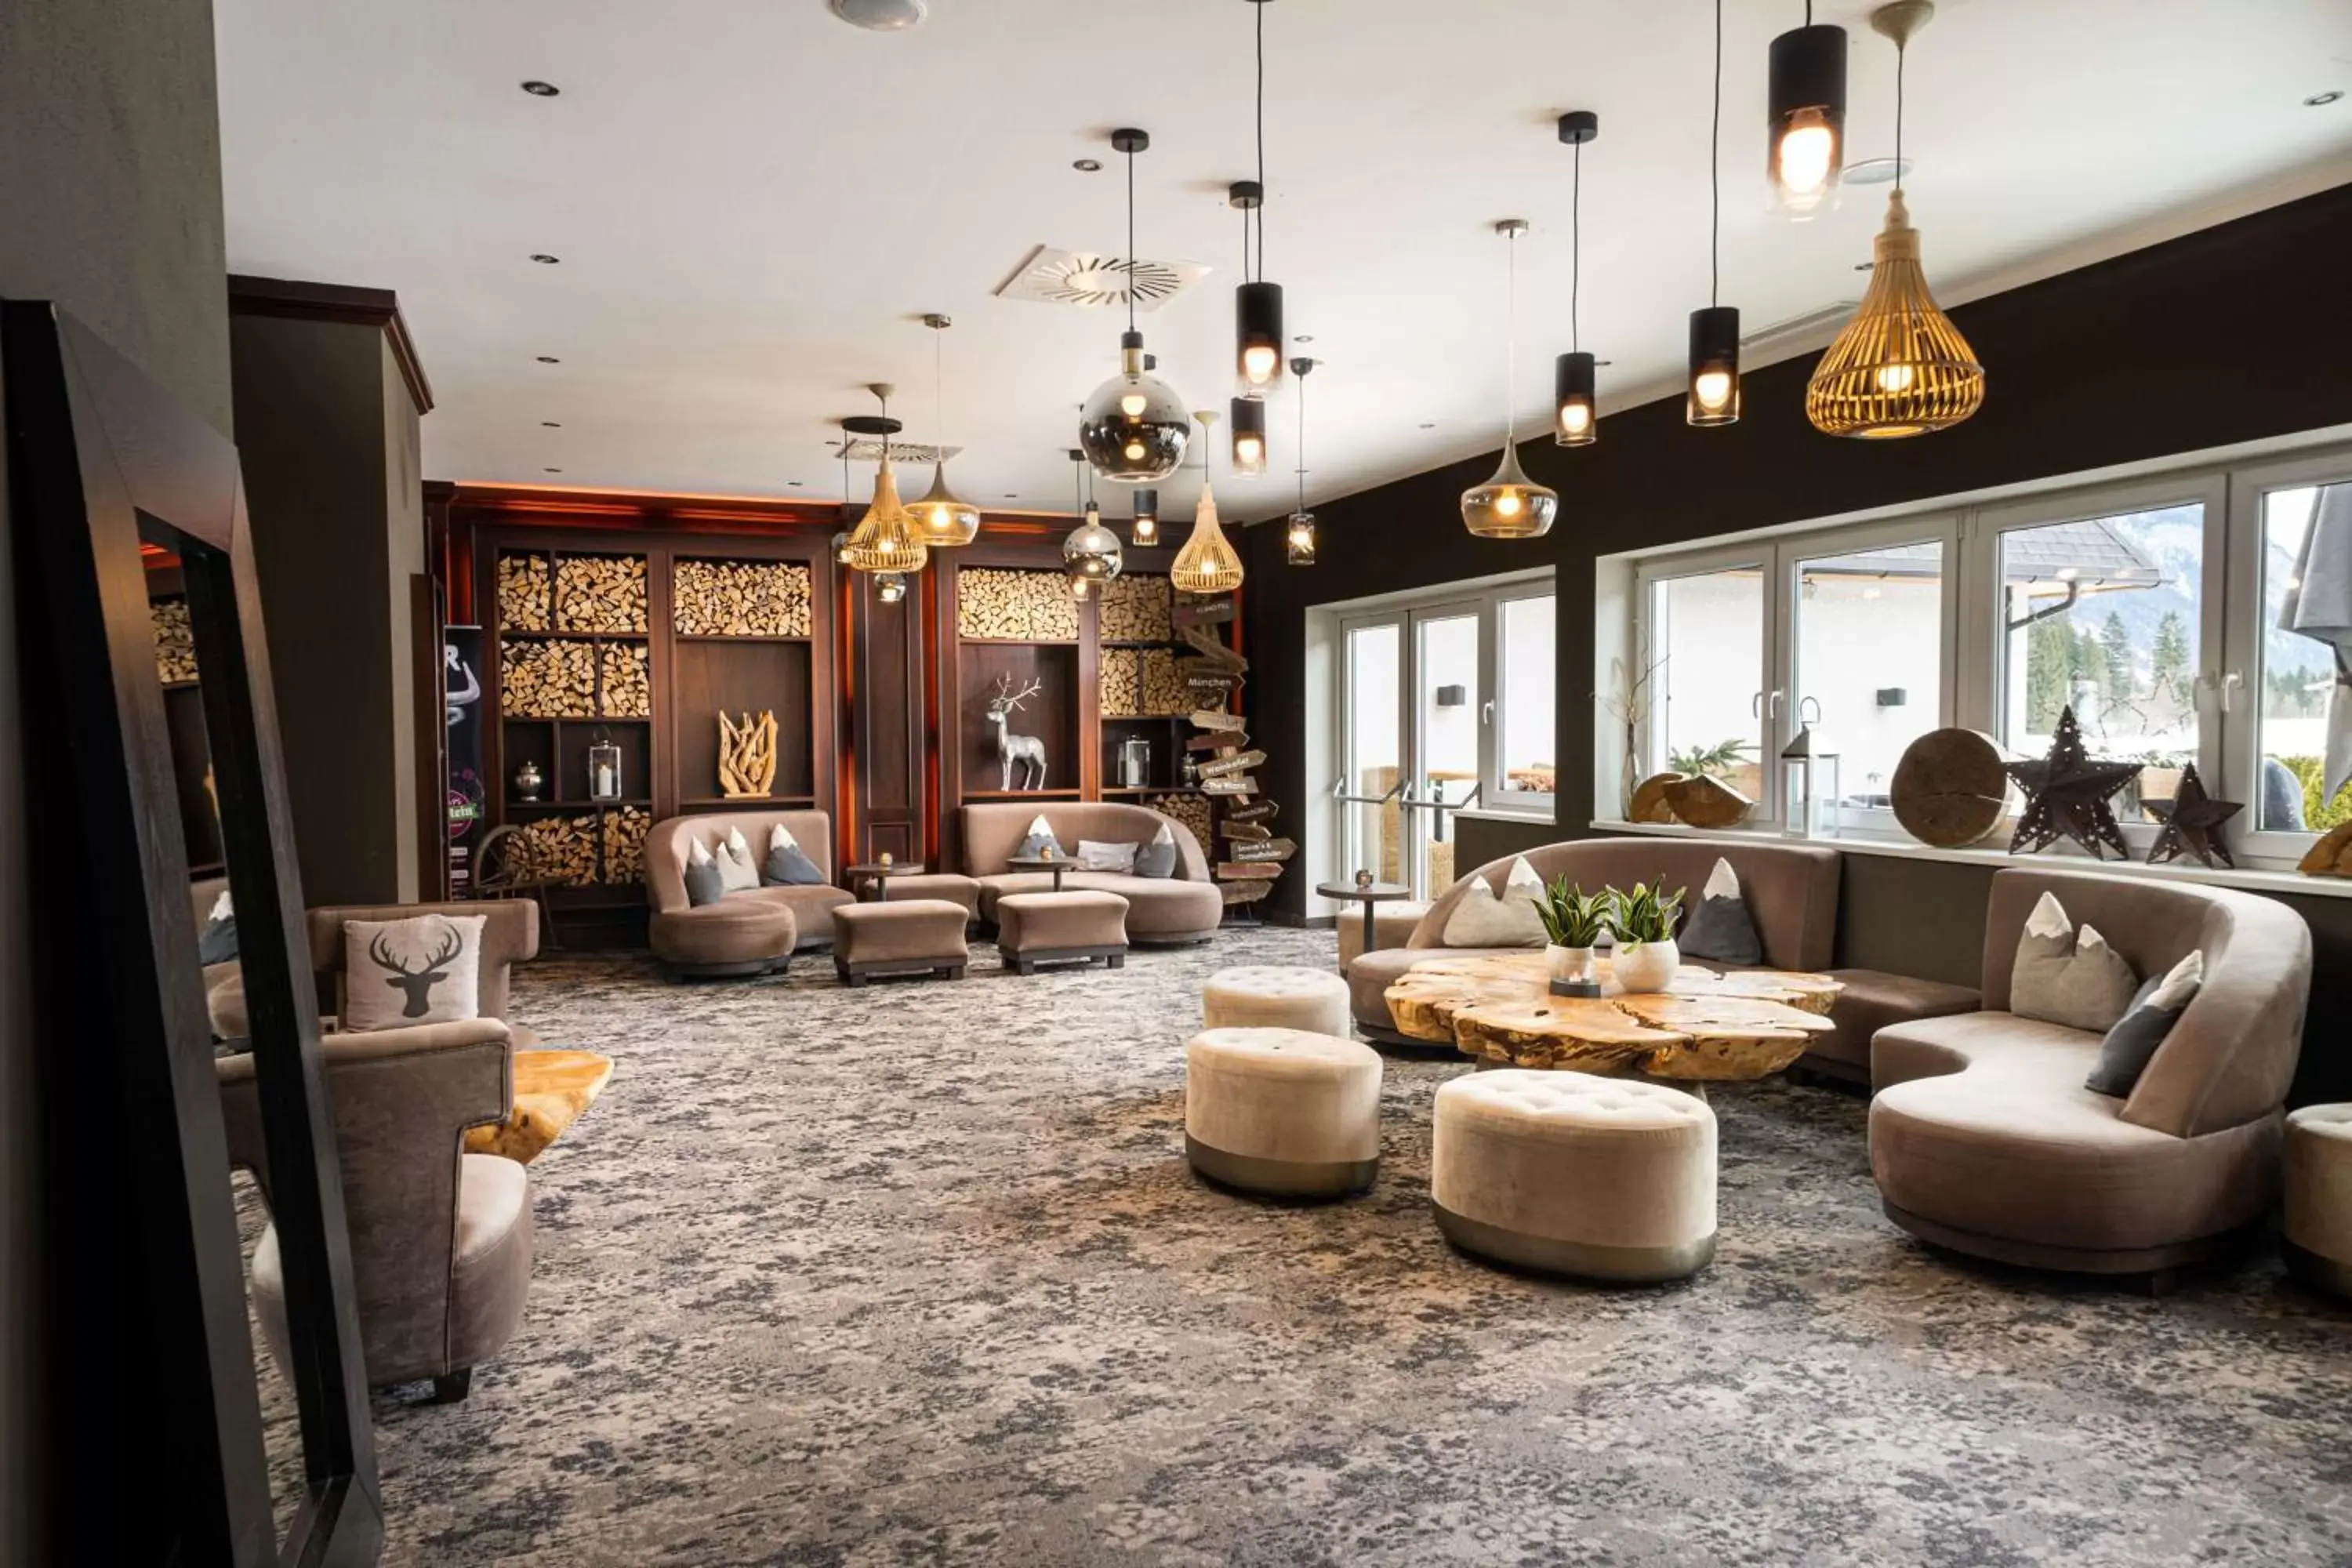 Lobby or reception, Lobby/Reception in KUHOTEL by Rilano